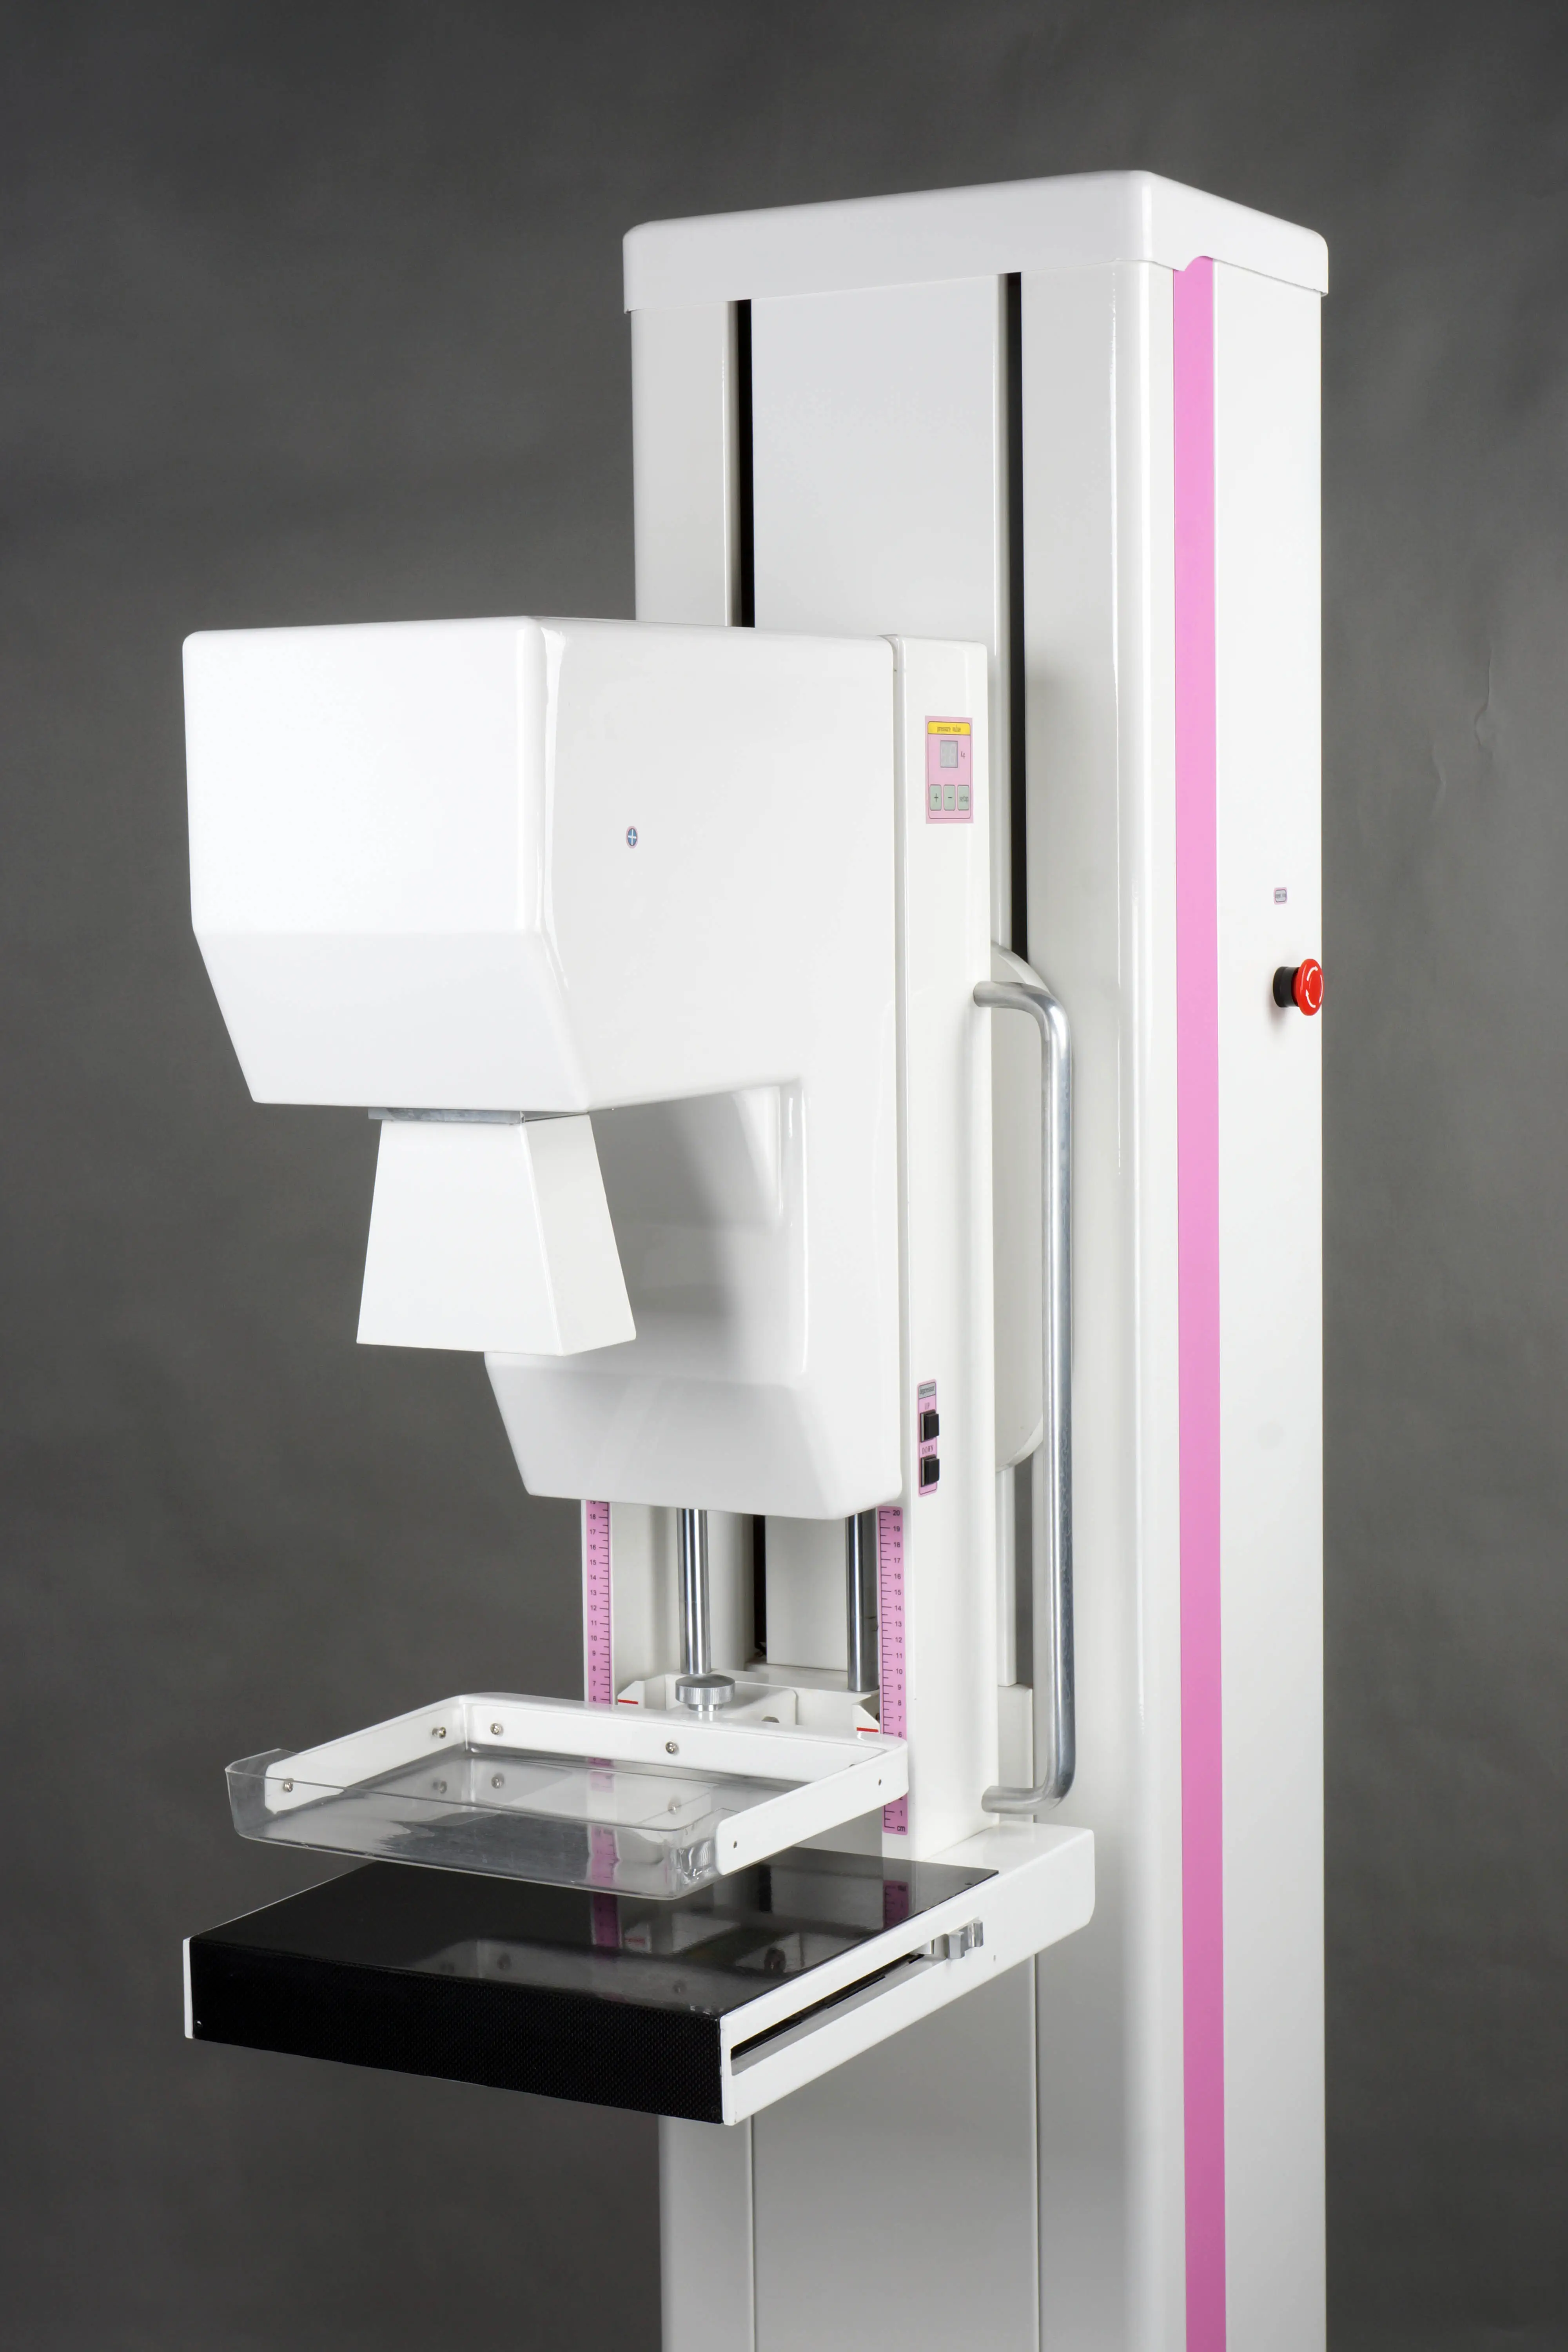 เครื่องเอกซเรย์เต้านมความถี่สูง,อุปกรณ์รังสีวิทยาดิจิทัล Mamografia อุปกรณ์รังสีเอกซ์ทางการแพทย์และอุปกรณ์เสริม